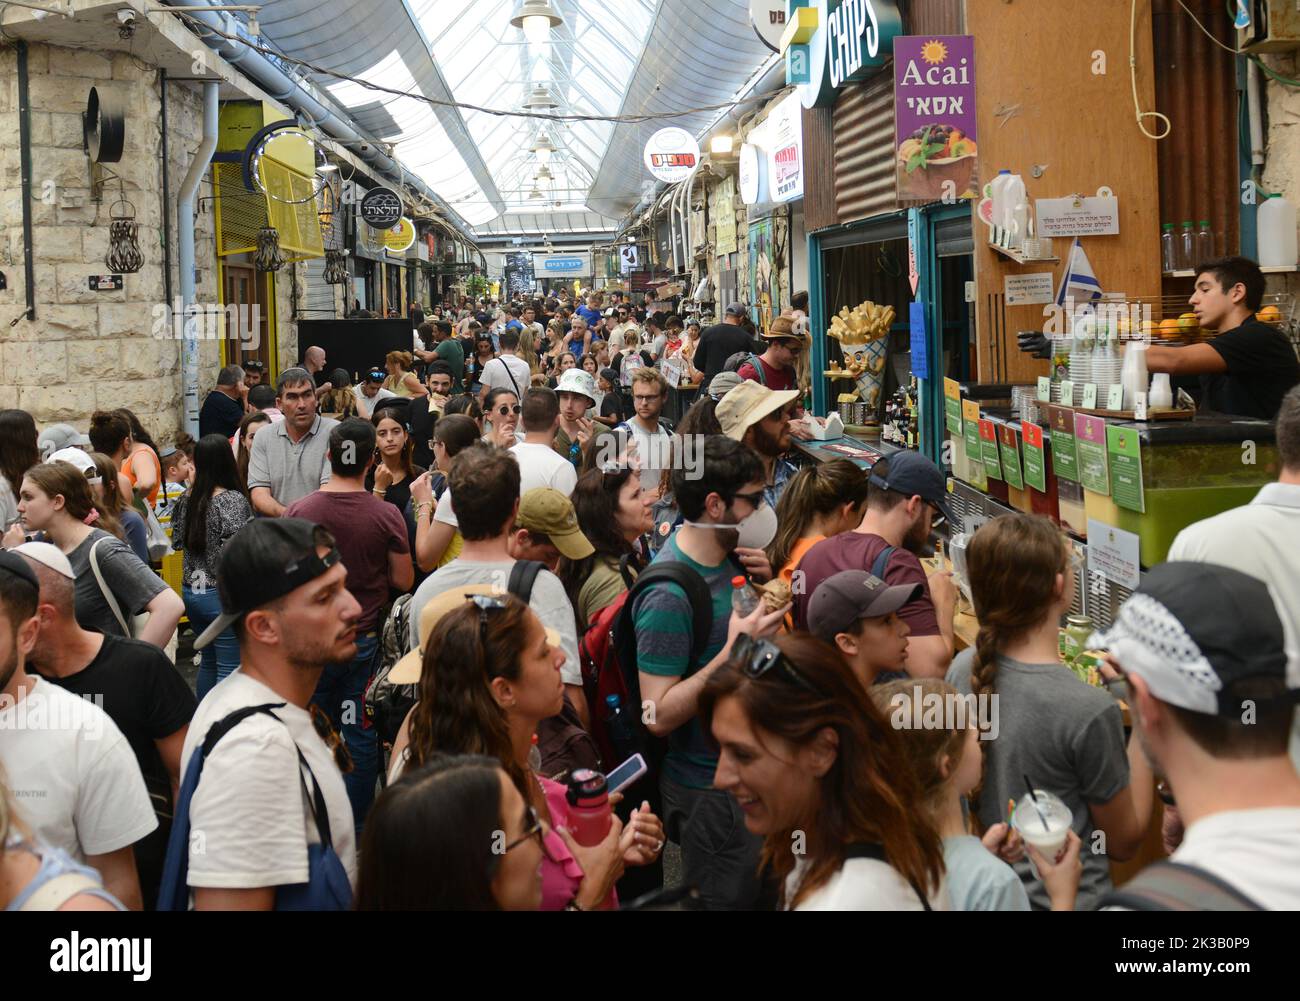 El concurrido y colorido mercado Machane Yehuda en Jerusalén, Israel. Foto de stock